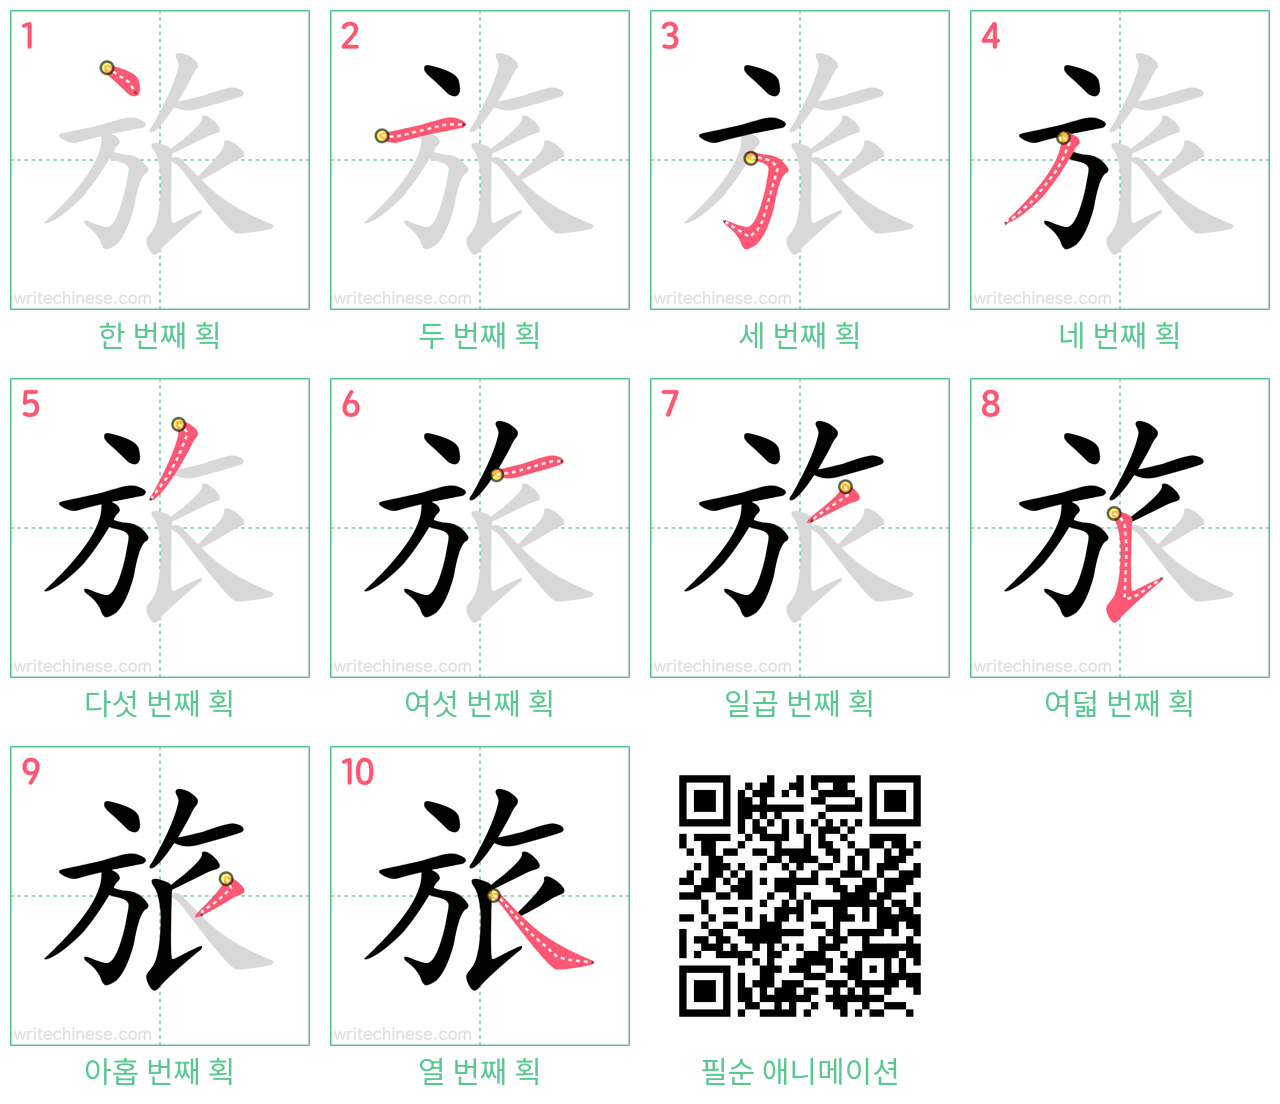 旅 step-by-step stroke order diagrams